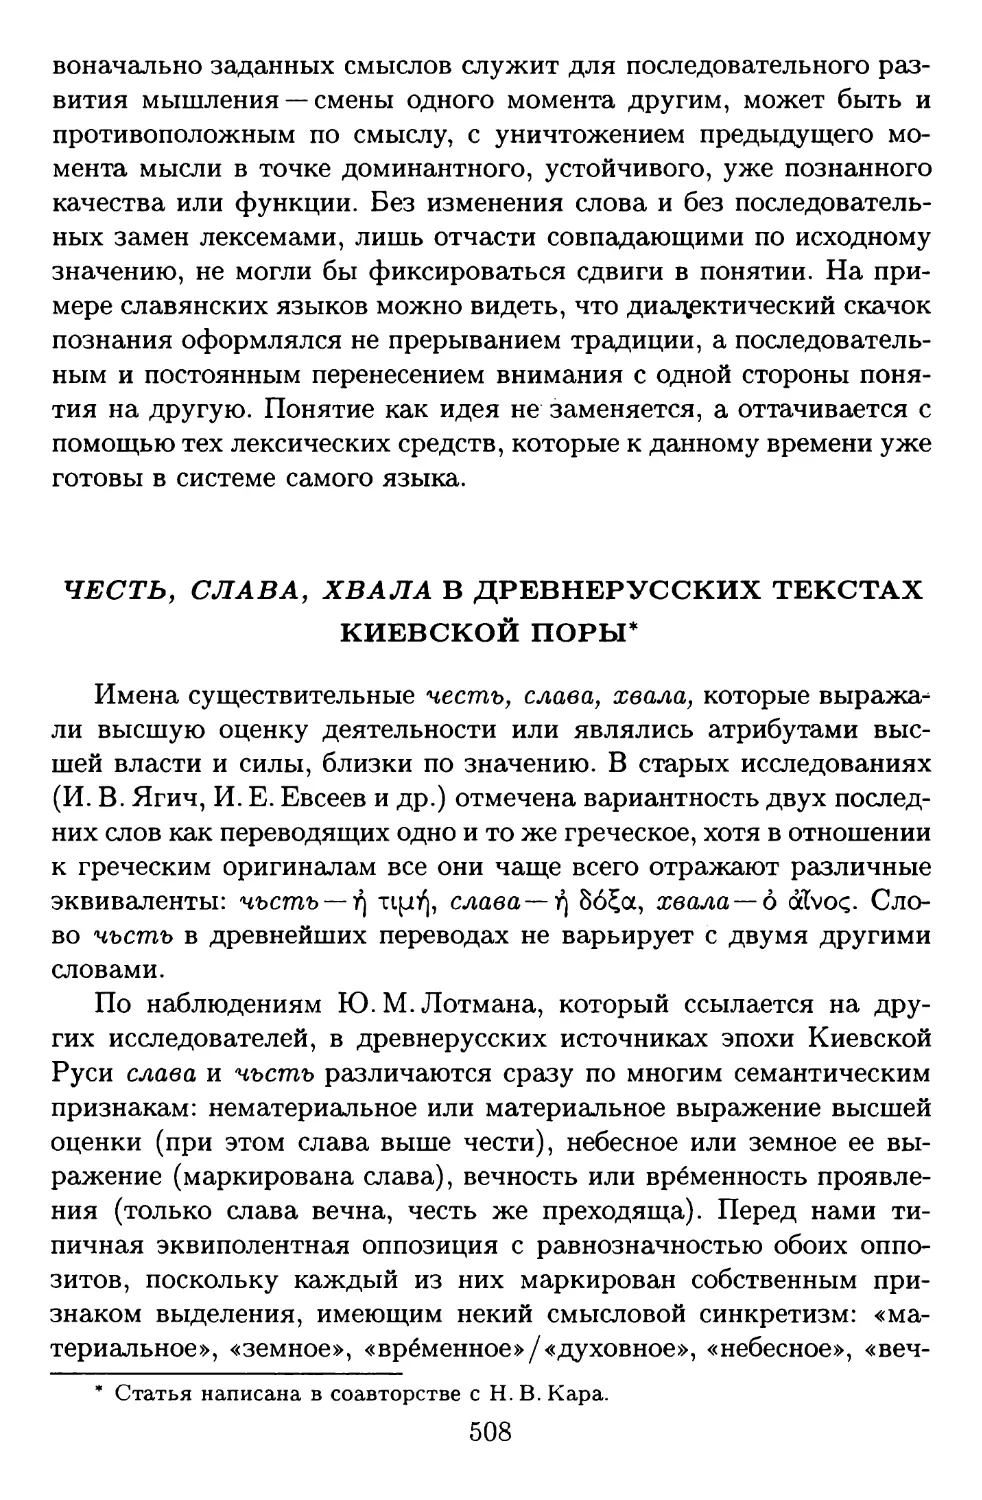 Честь, слава, хвала в древнерусских текстах Киевской поры